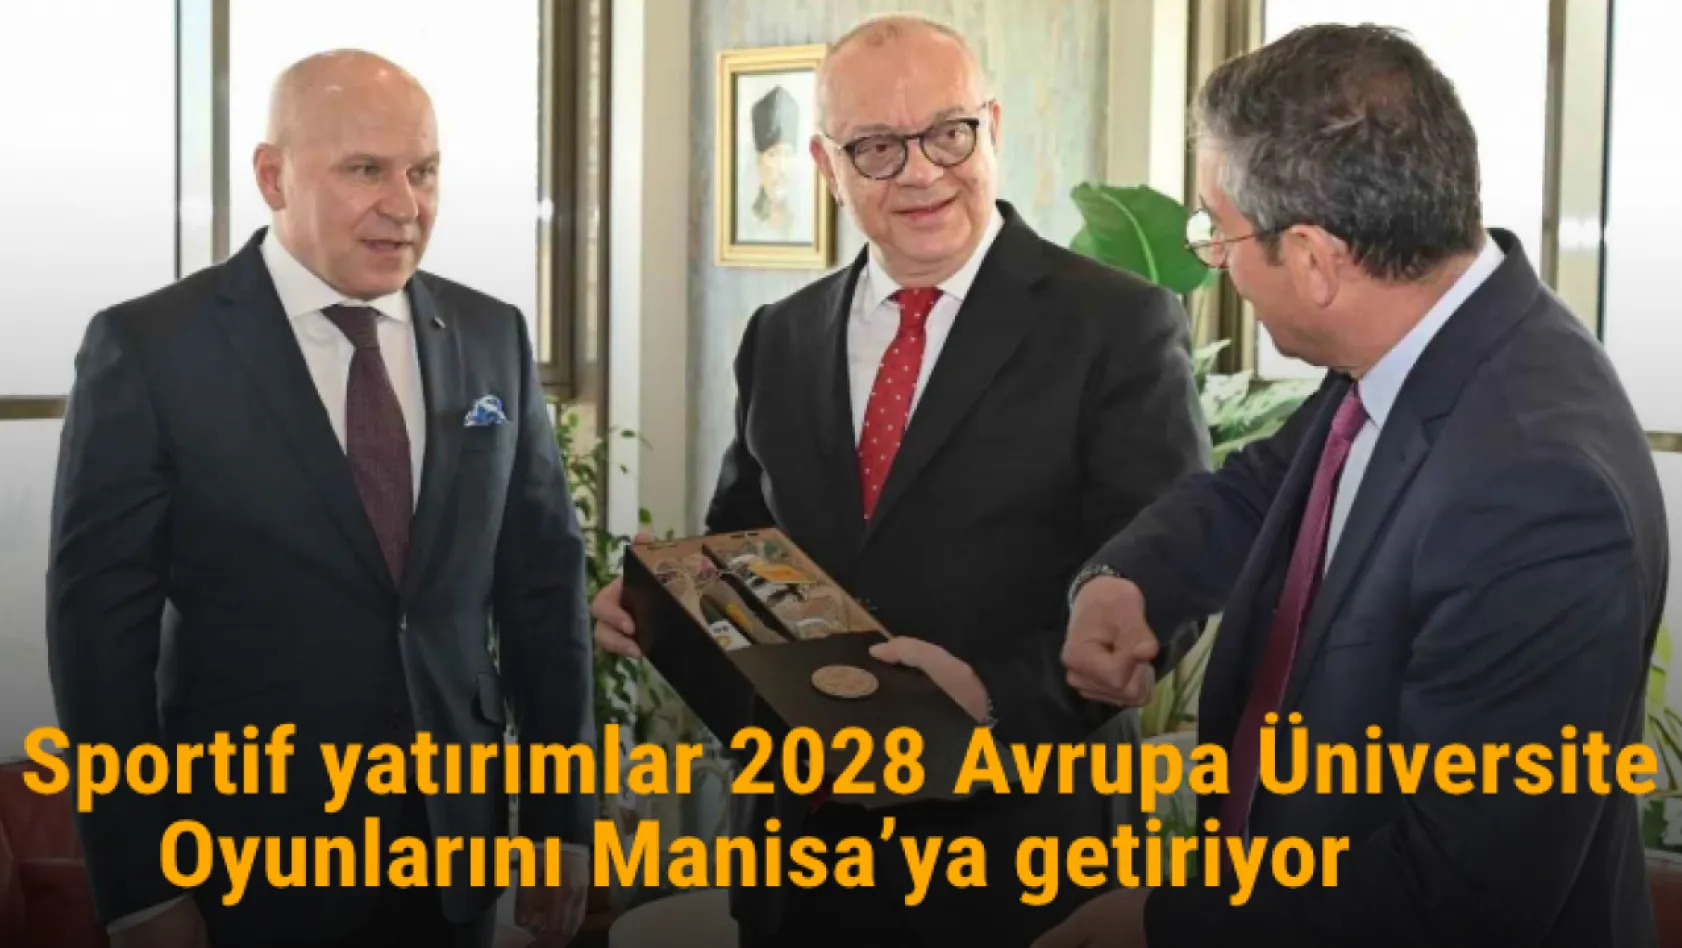 Sportif yatırımlar 2028 Avrupa Üniversite Oyunlarını Manisa'ya getiriyor